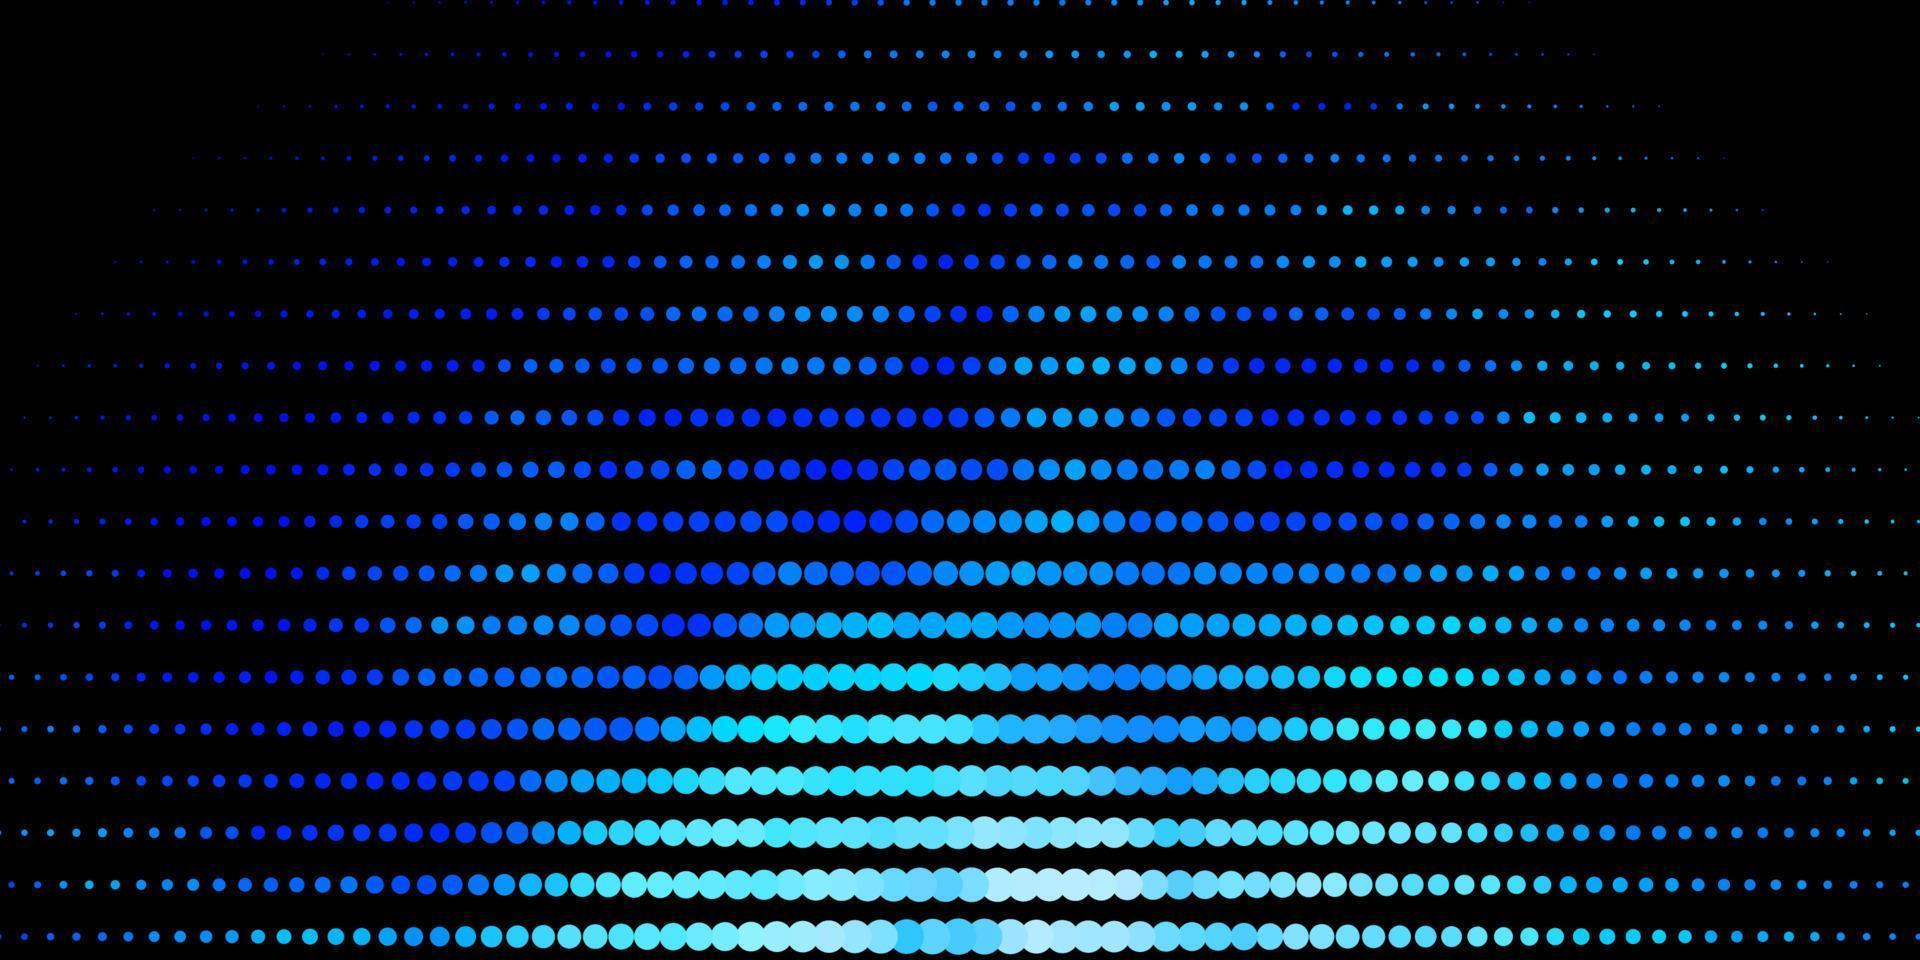 textura de vector azul oscuro con discos.